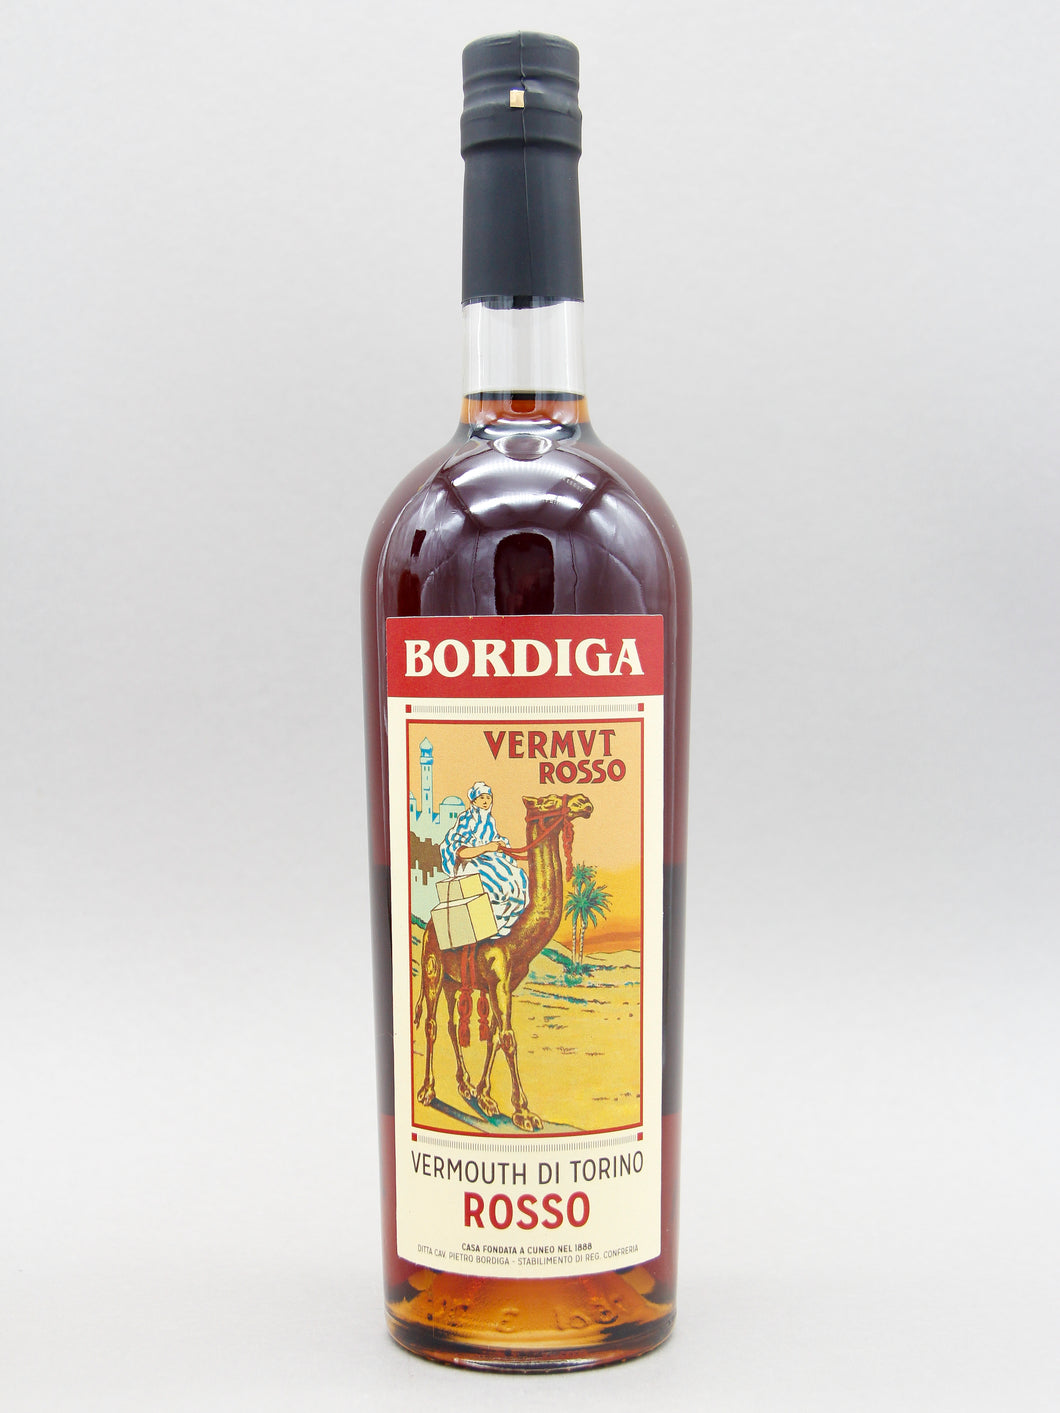 Bordiga Vermouth Di Torino Rosso, Italy (18%, 75cl)